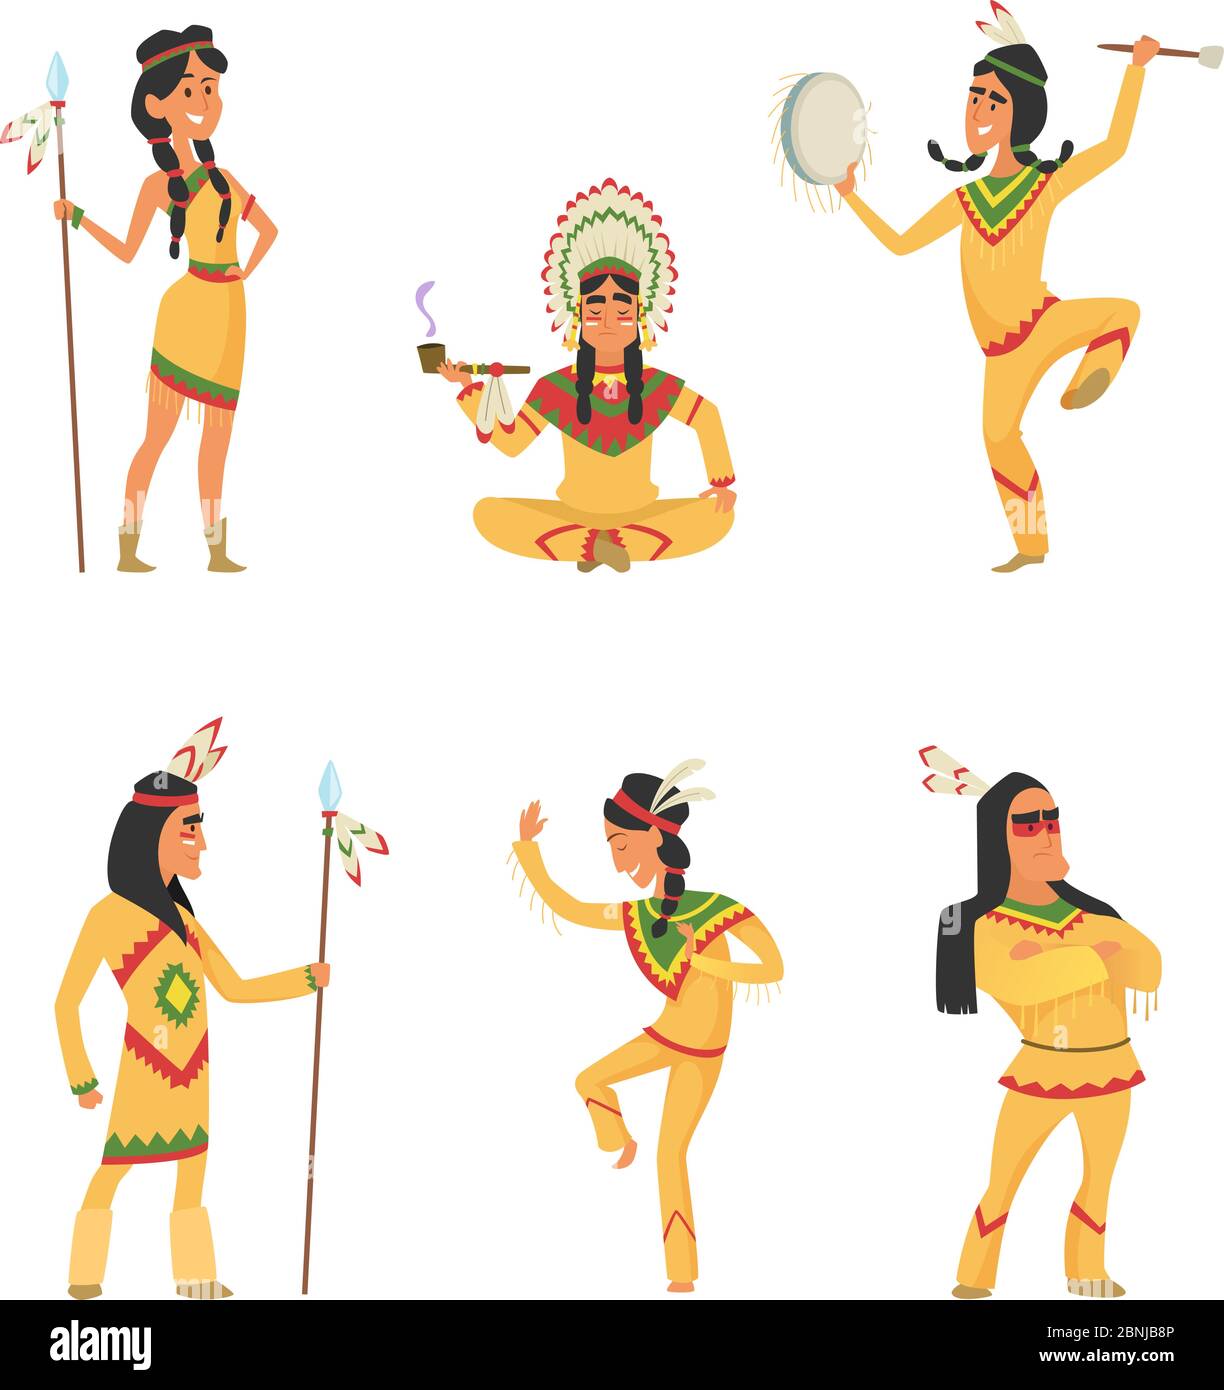 Indiens d'Amérique. Caractères de dessin animé définis dans le style vectoriel Illustration de Vecteur